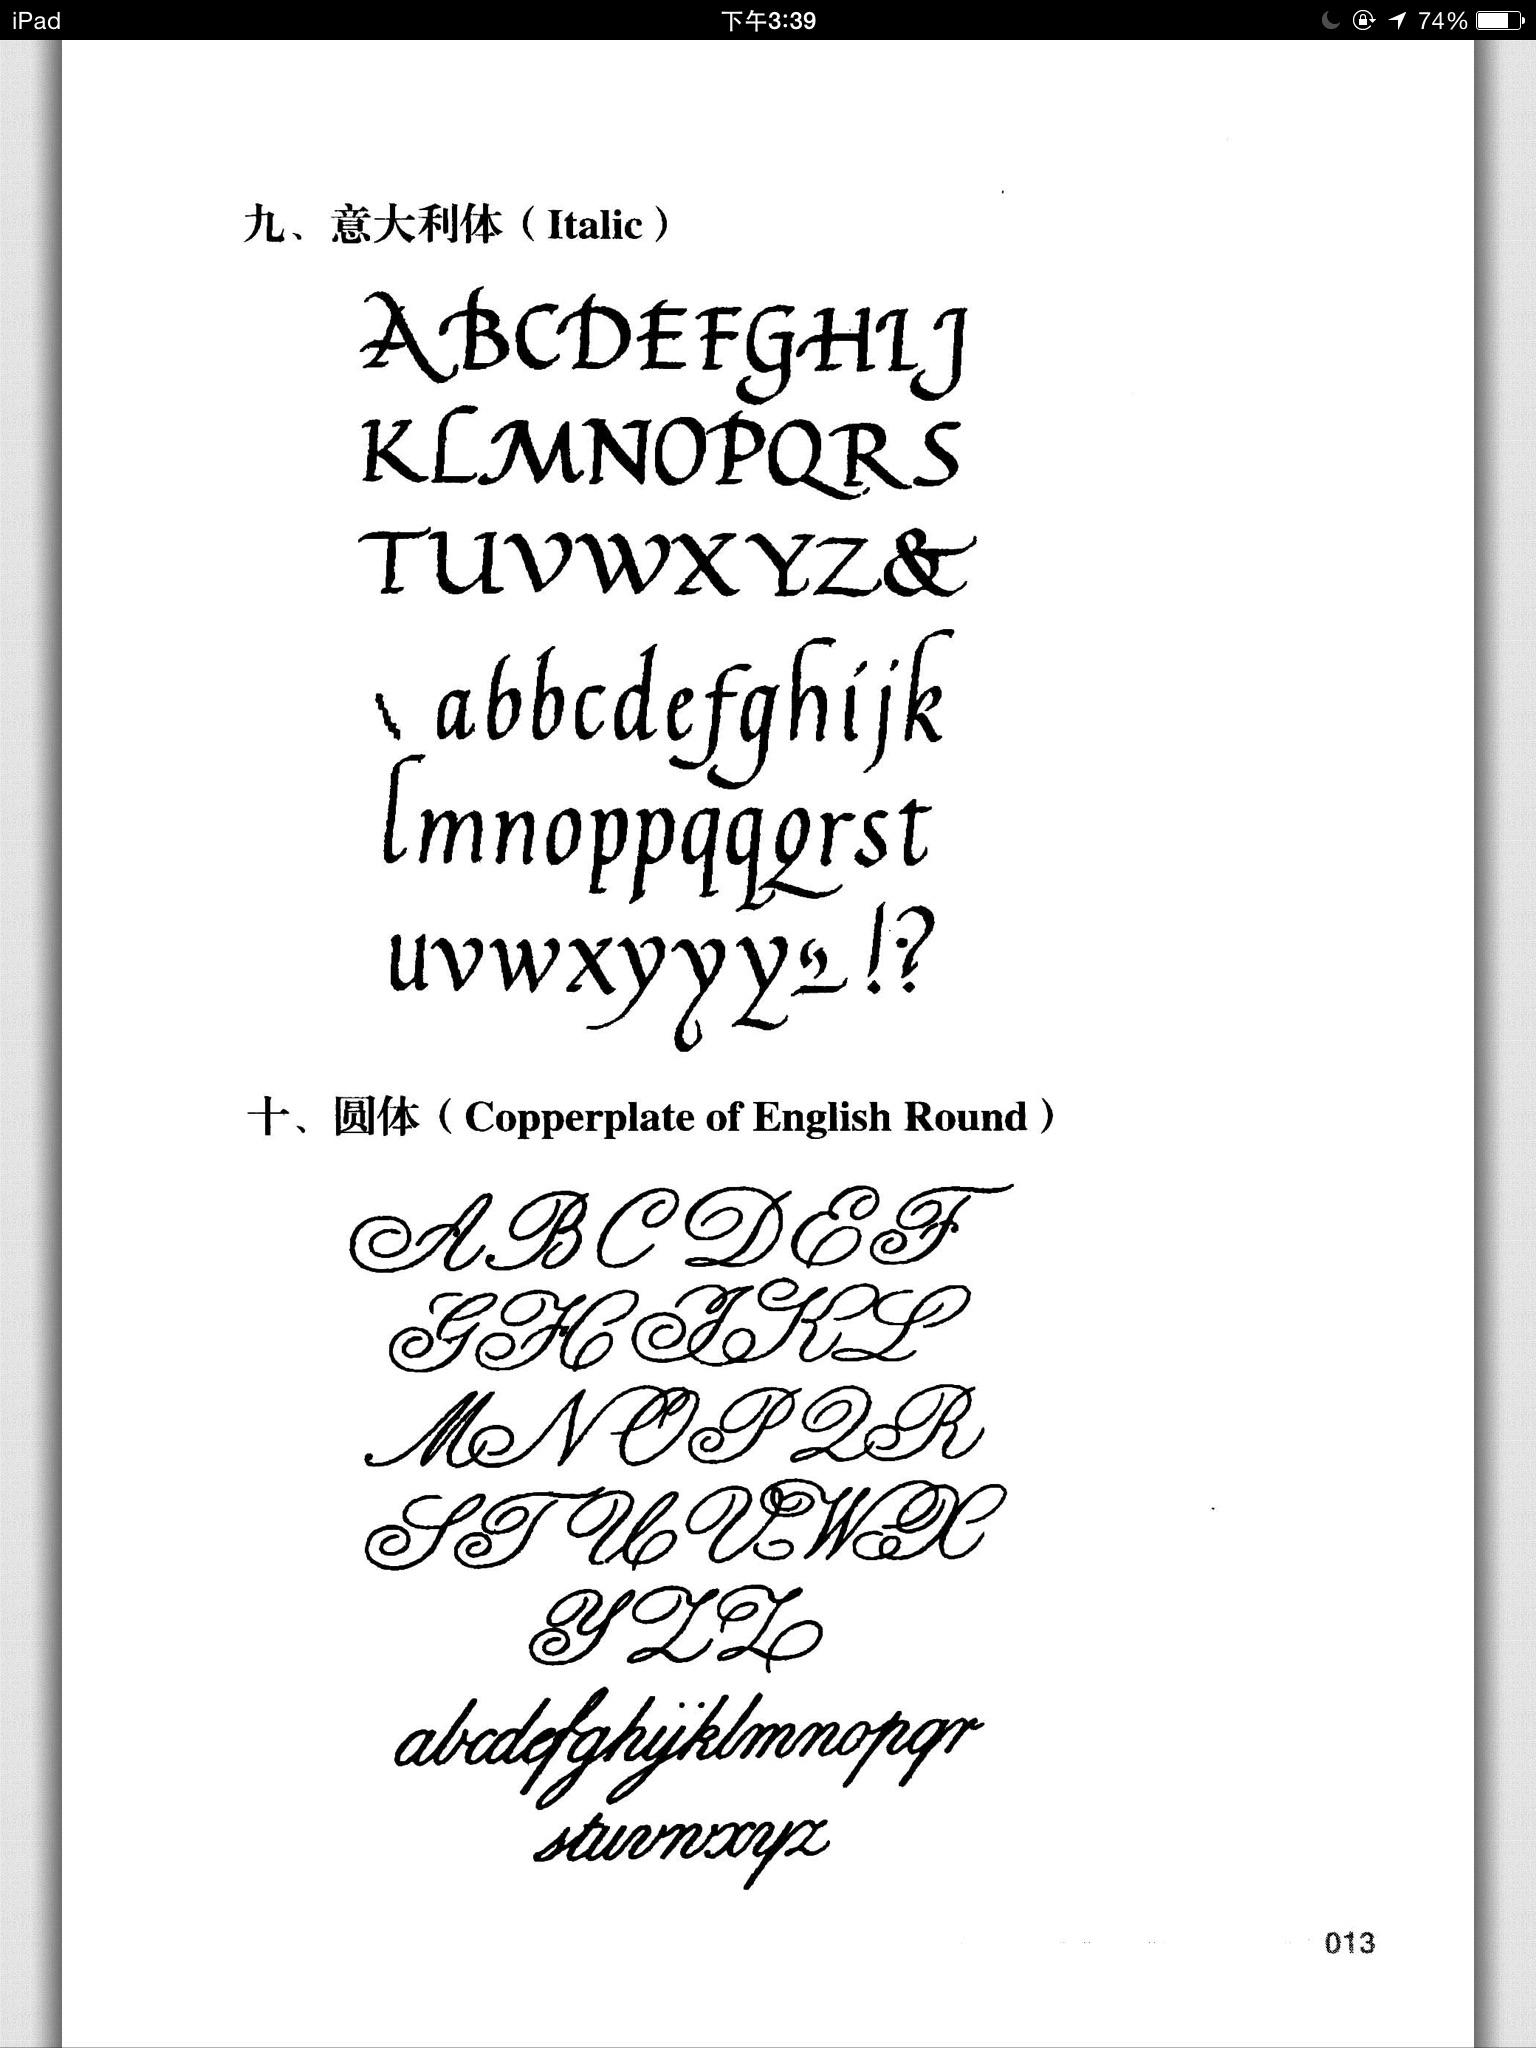 26个字母罗马字体复制图片